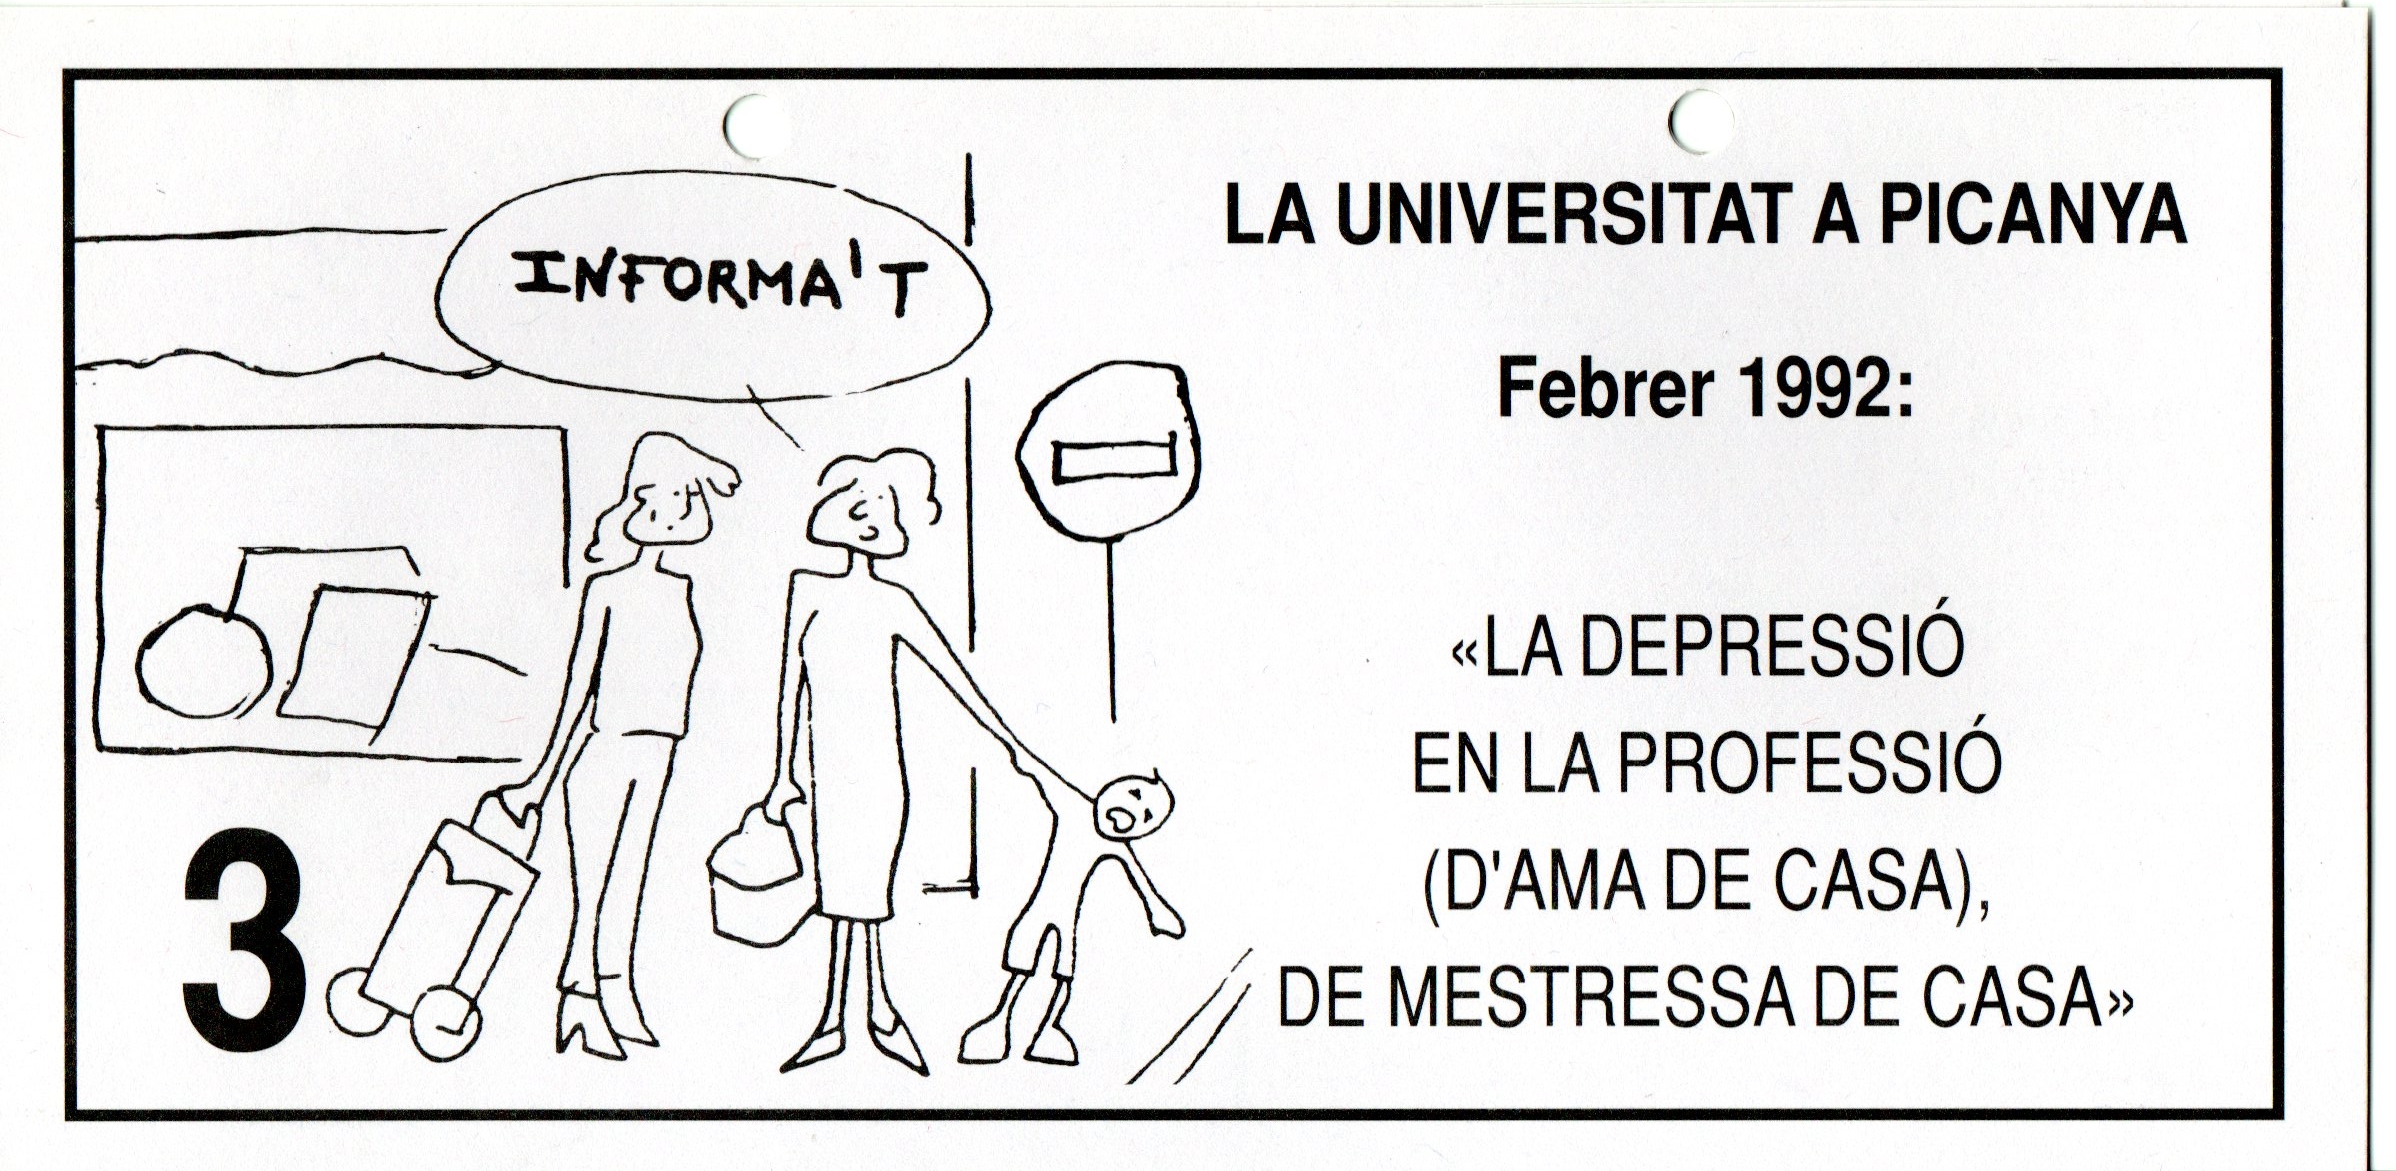 CEL-DO-A0679 - La Universitat a Picanya